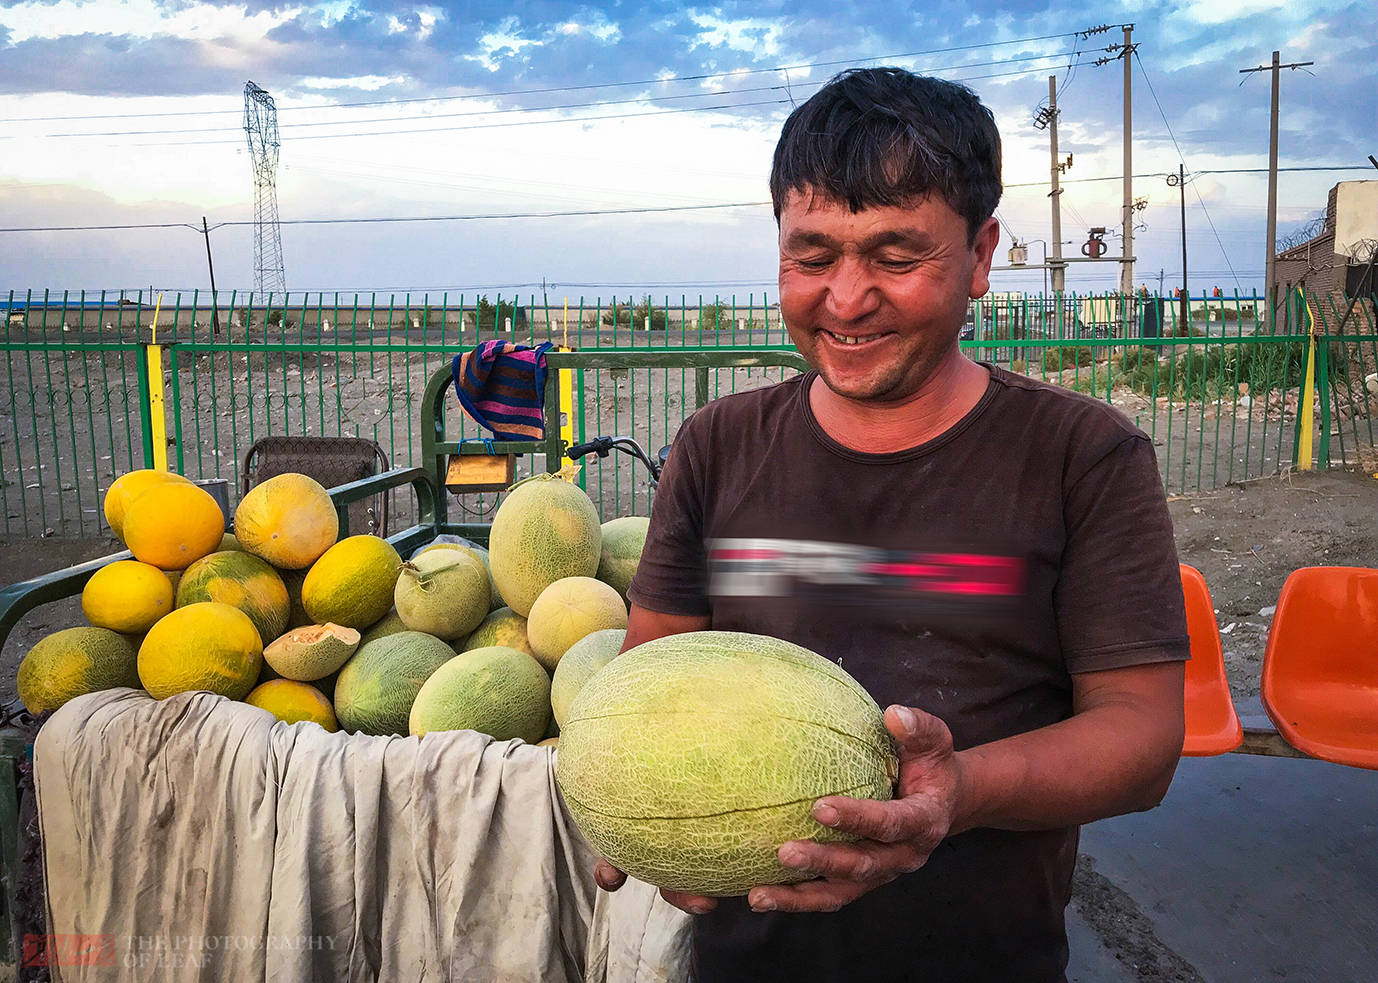 新疆大哥路边卖哈密瓜，才卖2块钱一斤，糖份太高吃完手都黏糊糊